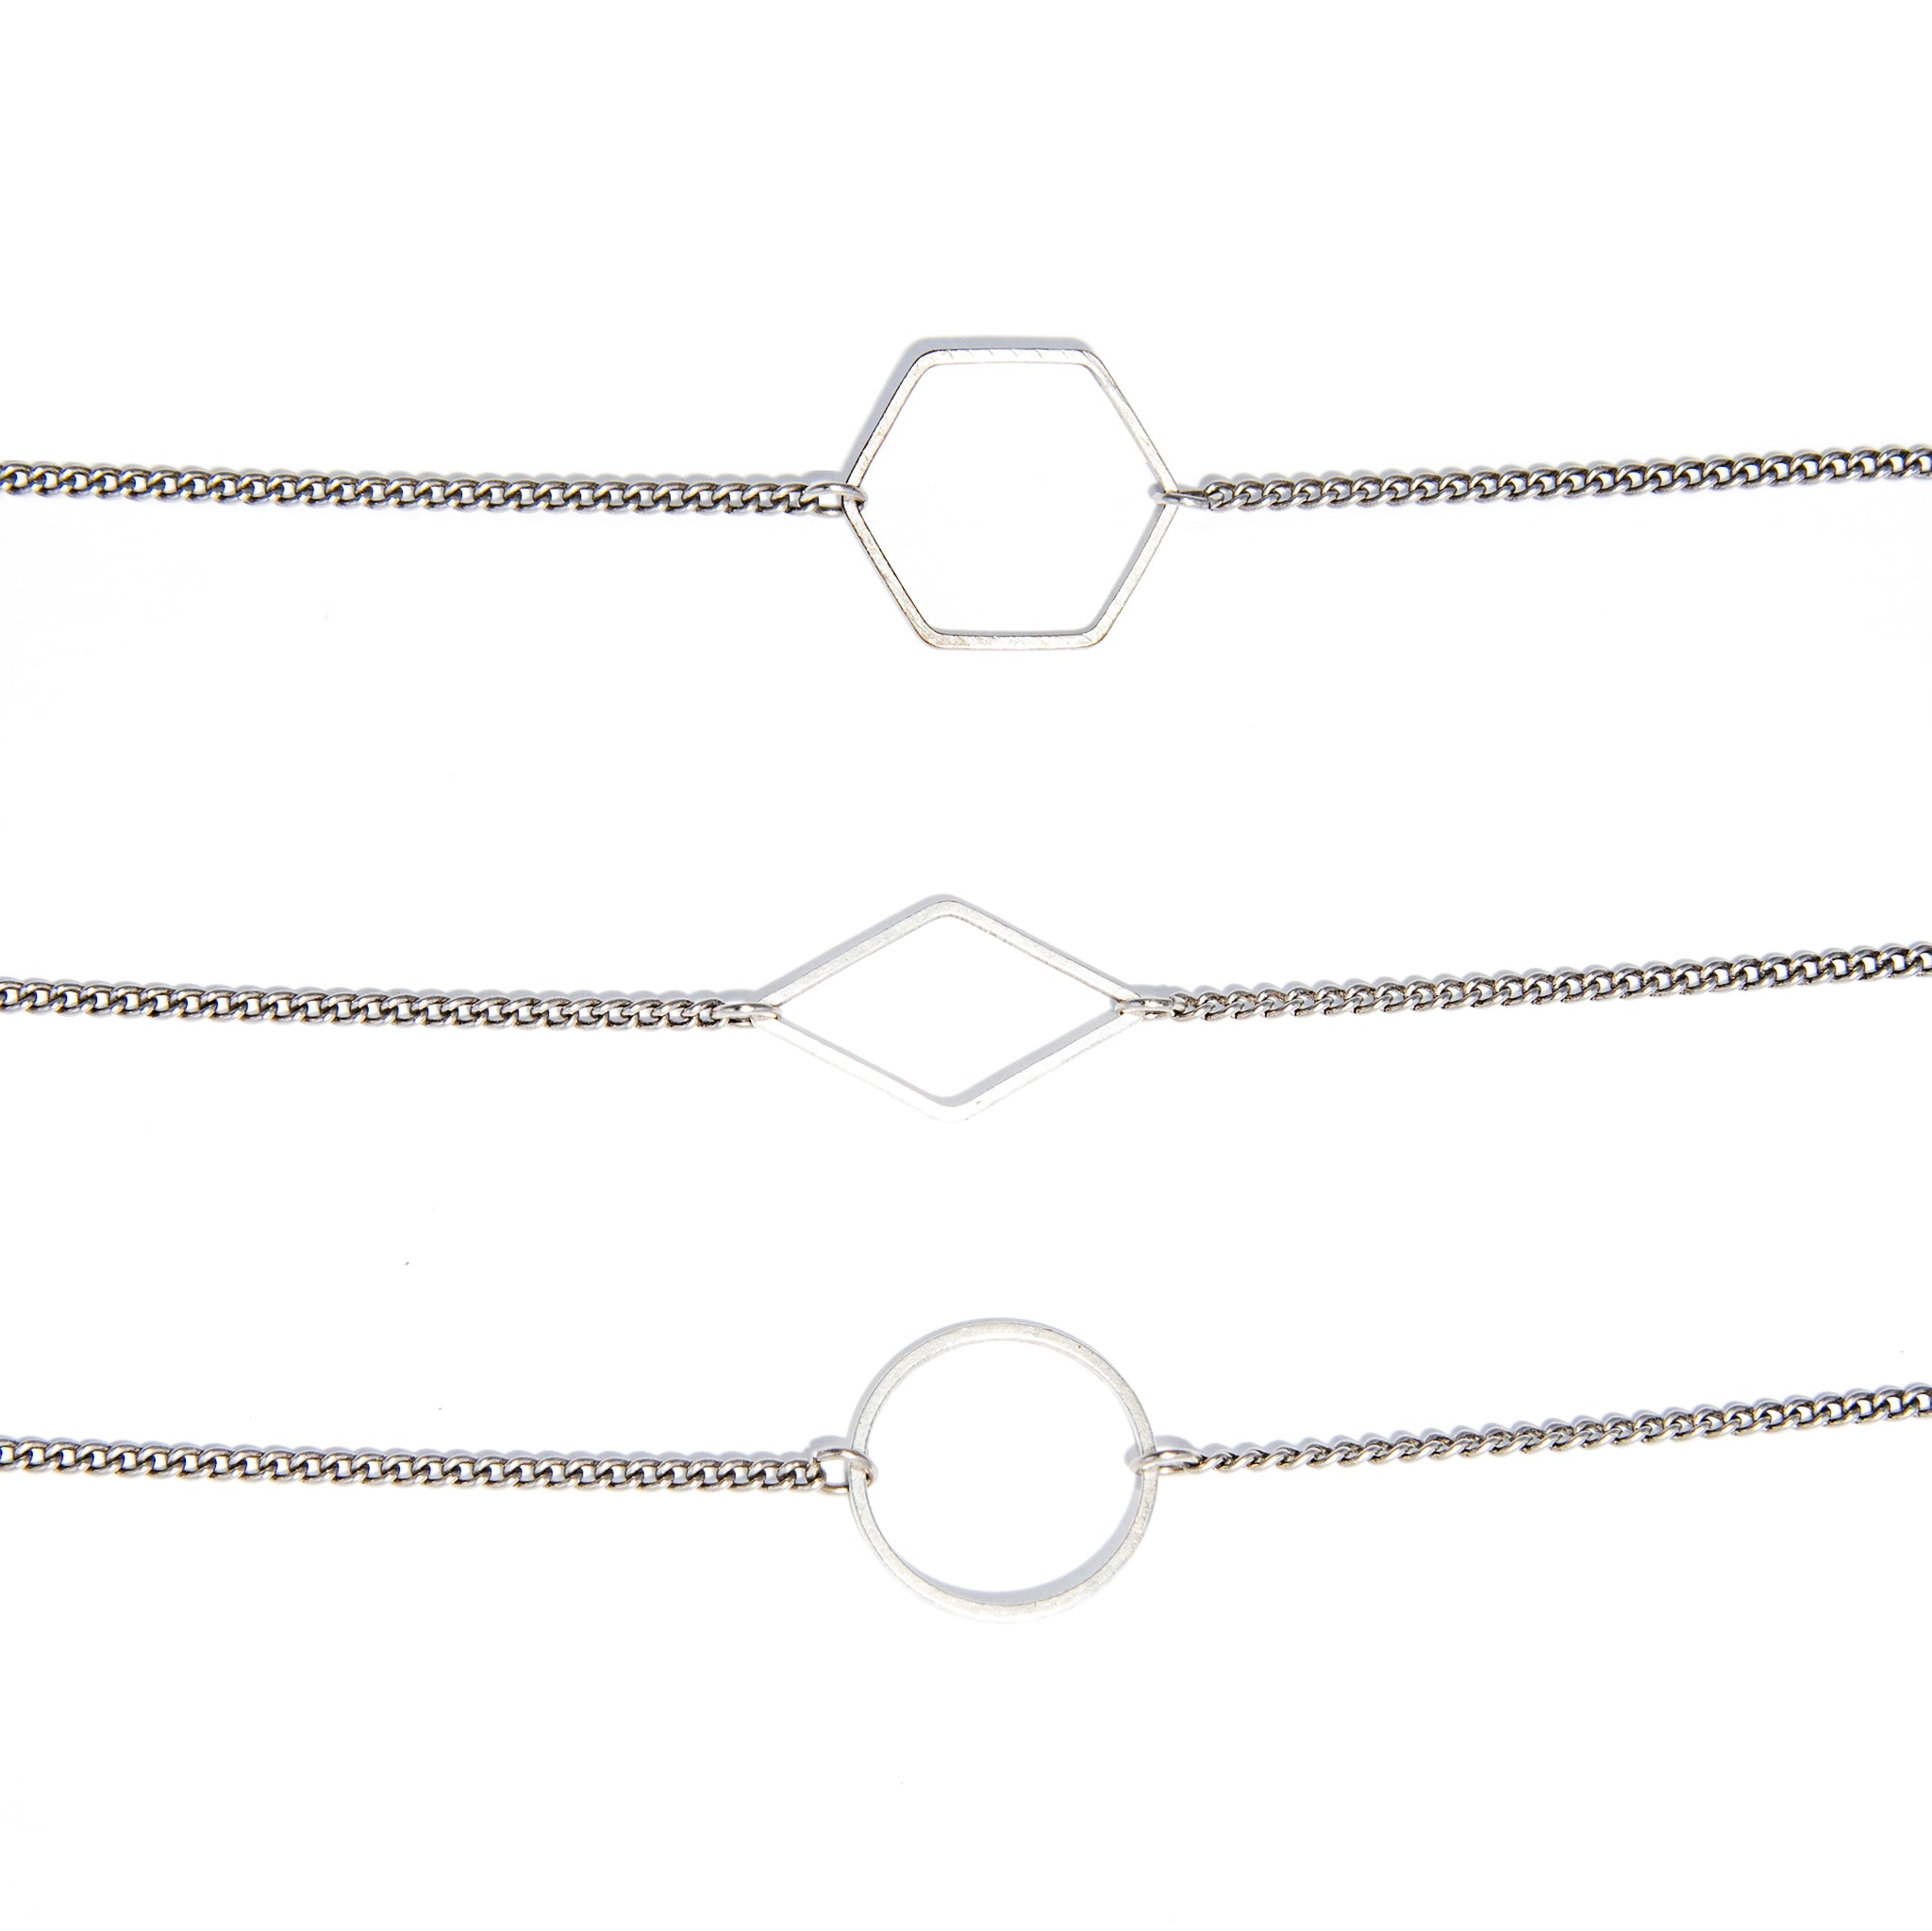 Convertible Necklace/Bracelet